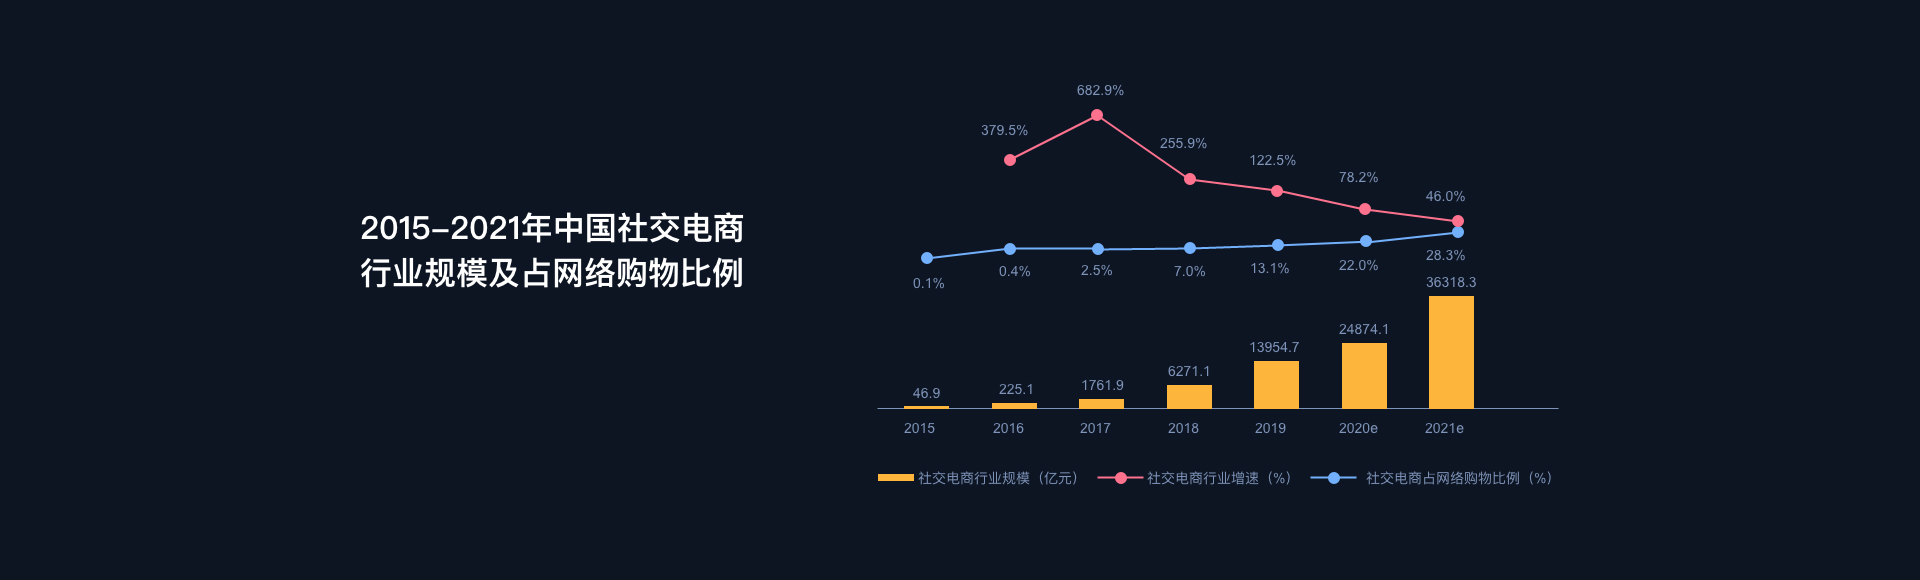 2015-2021年中国社交电商行业规模及占网络购物比例